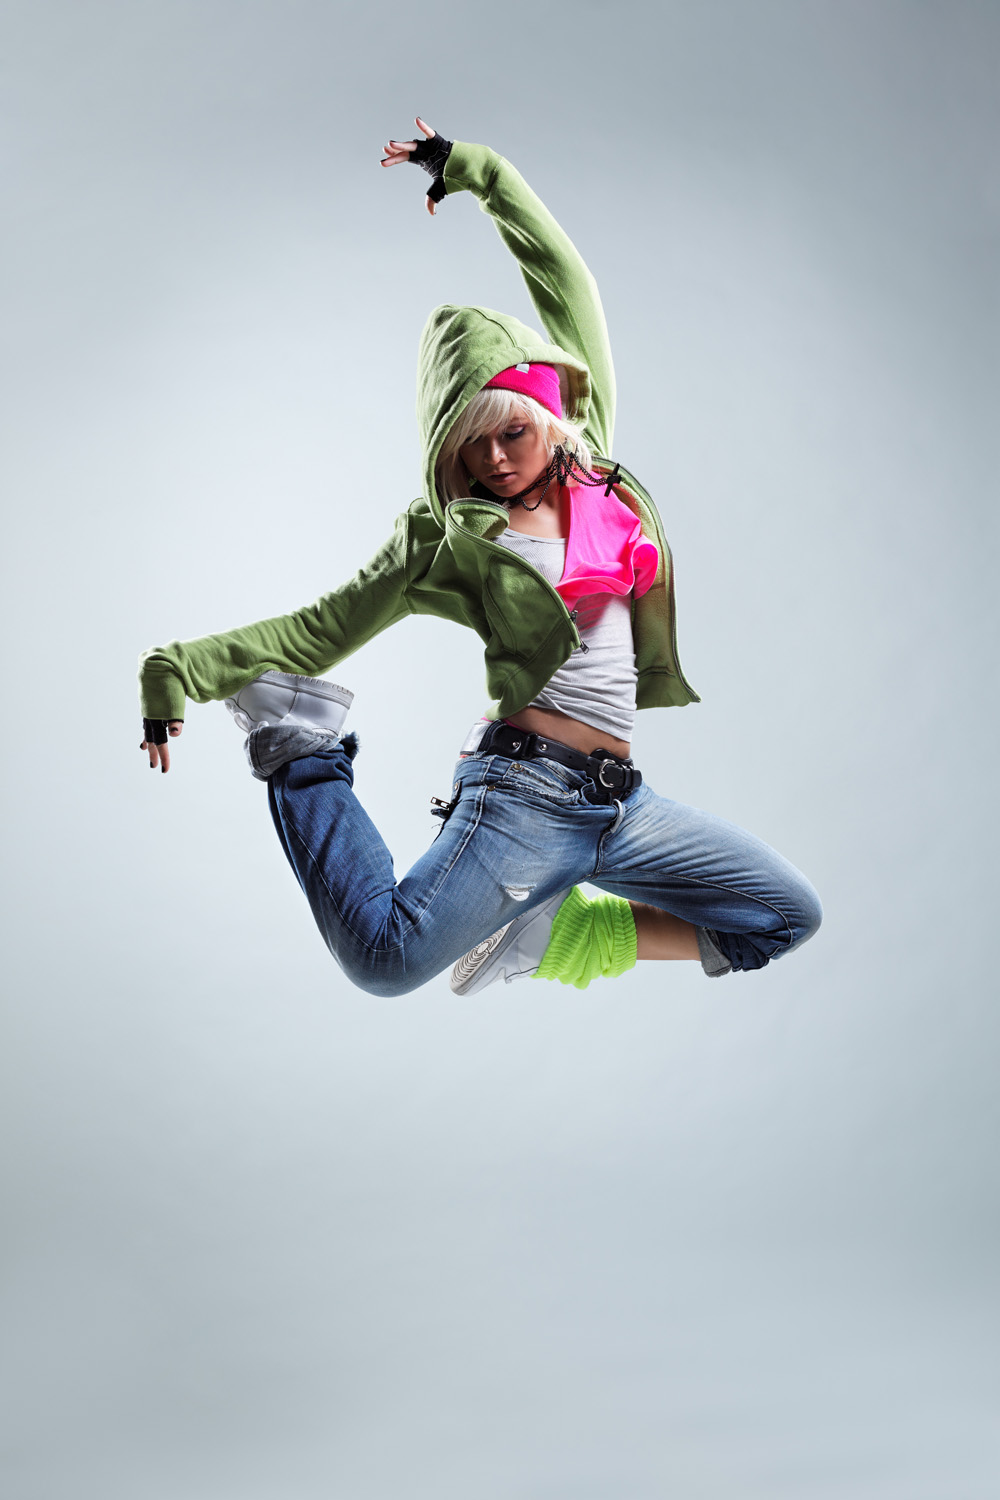 hip hop dance wallpaper,jumping,fun,extreme sport,street dance,joint